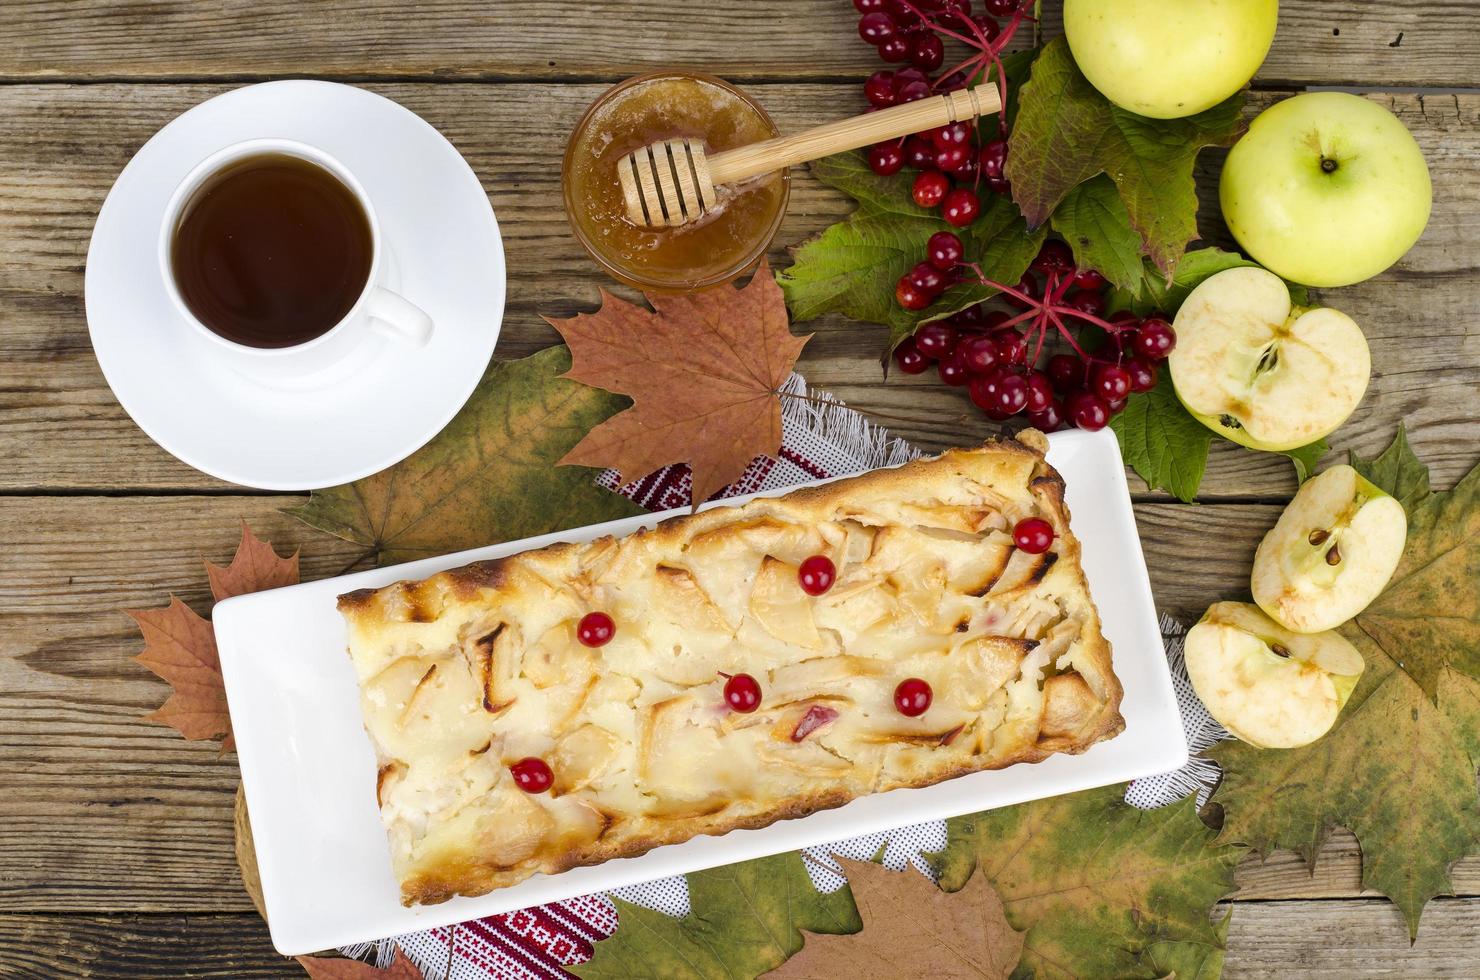 torta de maçã de outono com bagas de viburnum em fundo de madeira foto